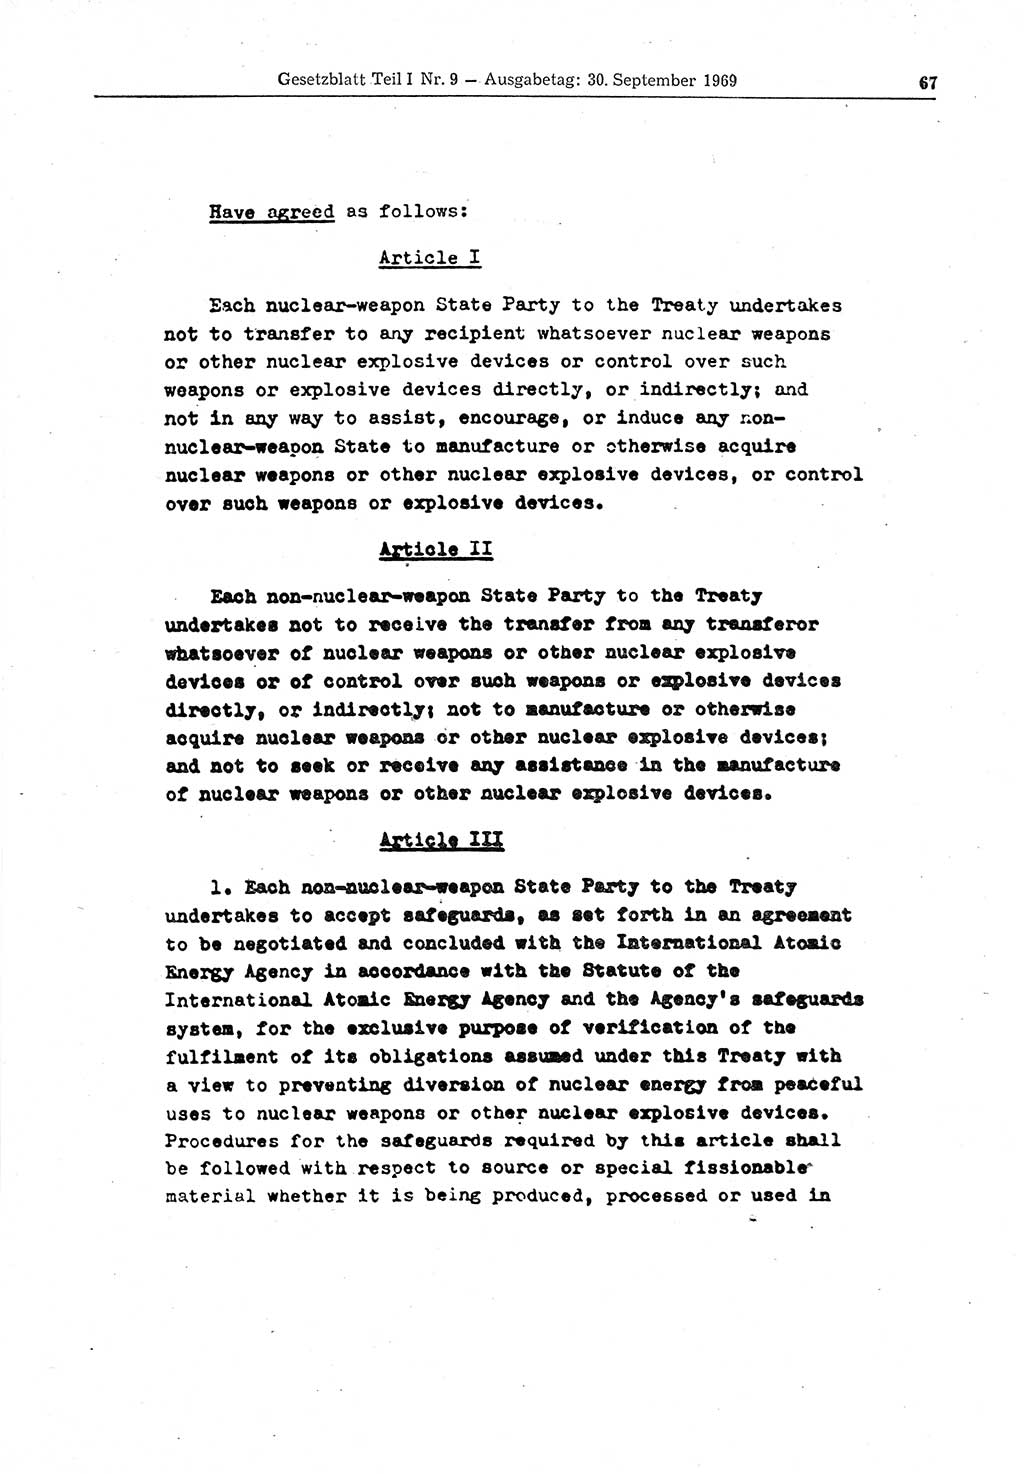 Gesetzblatt (GBl.) der Deutschen Demokratischen Republik (DDR) Teil Ⅰ 1969, Seite 67 (GBl. DDR Ⅰ 1969, S. 67)